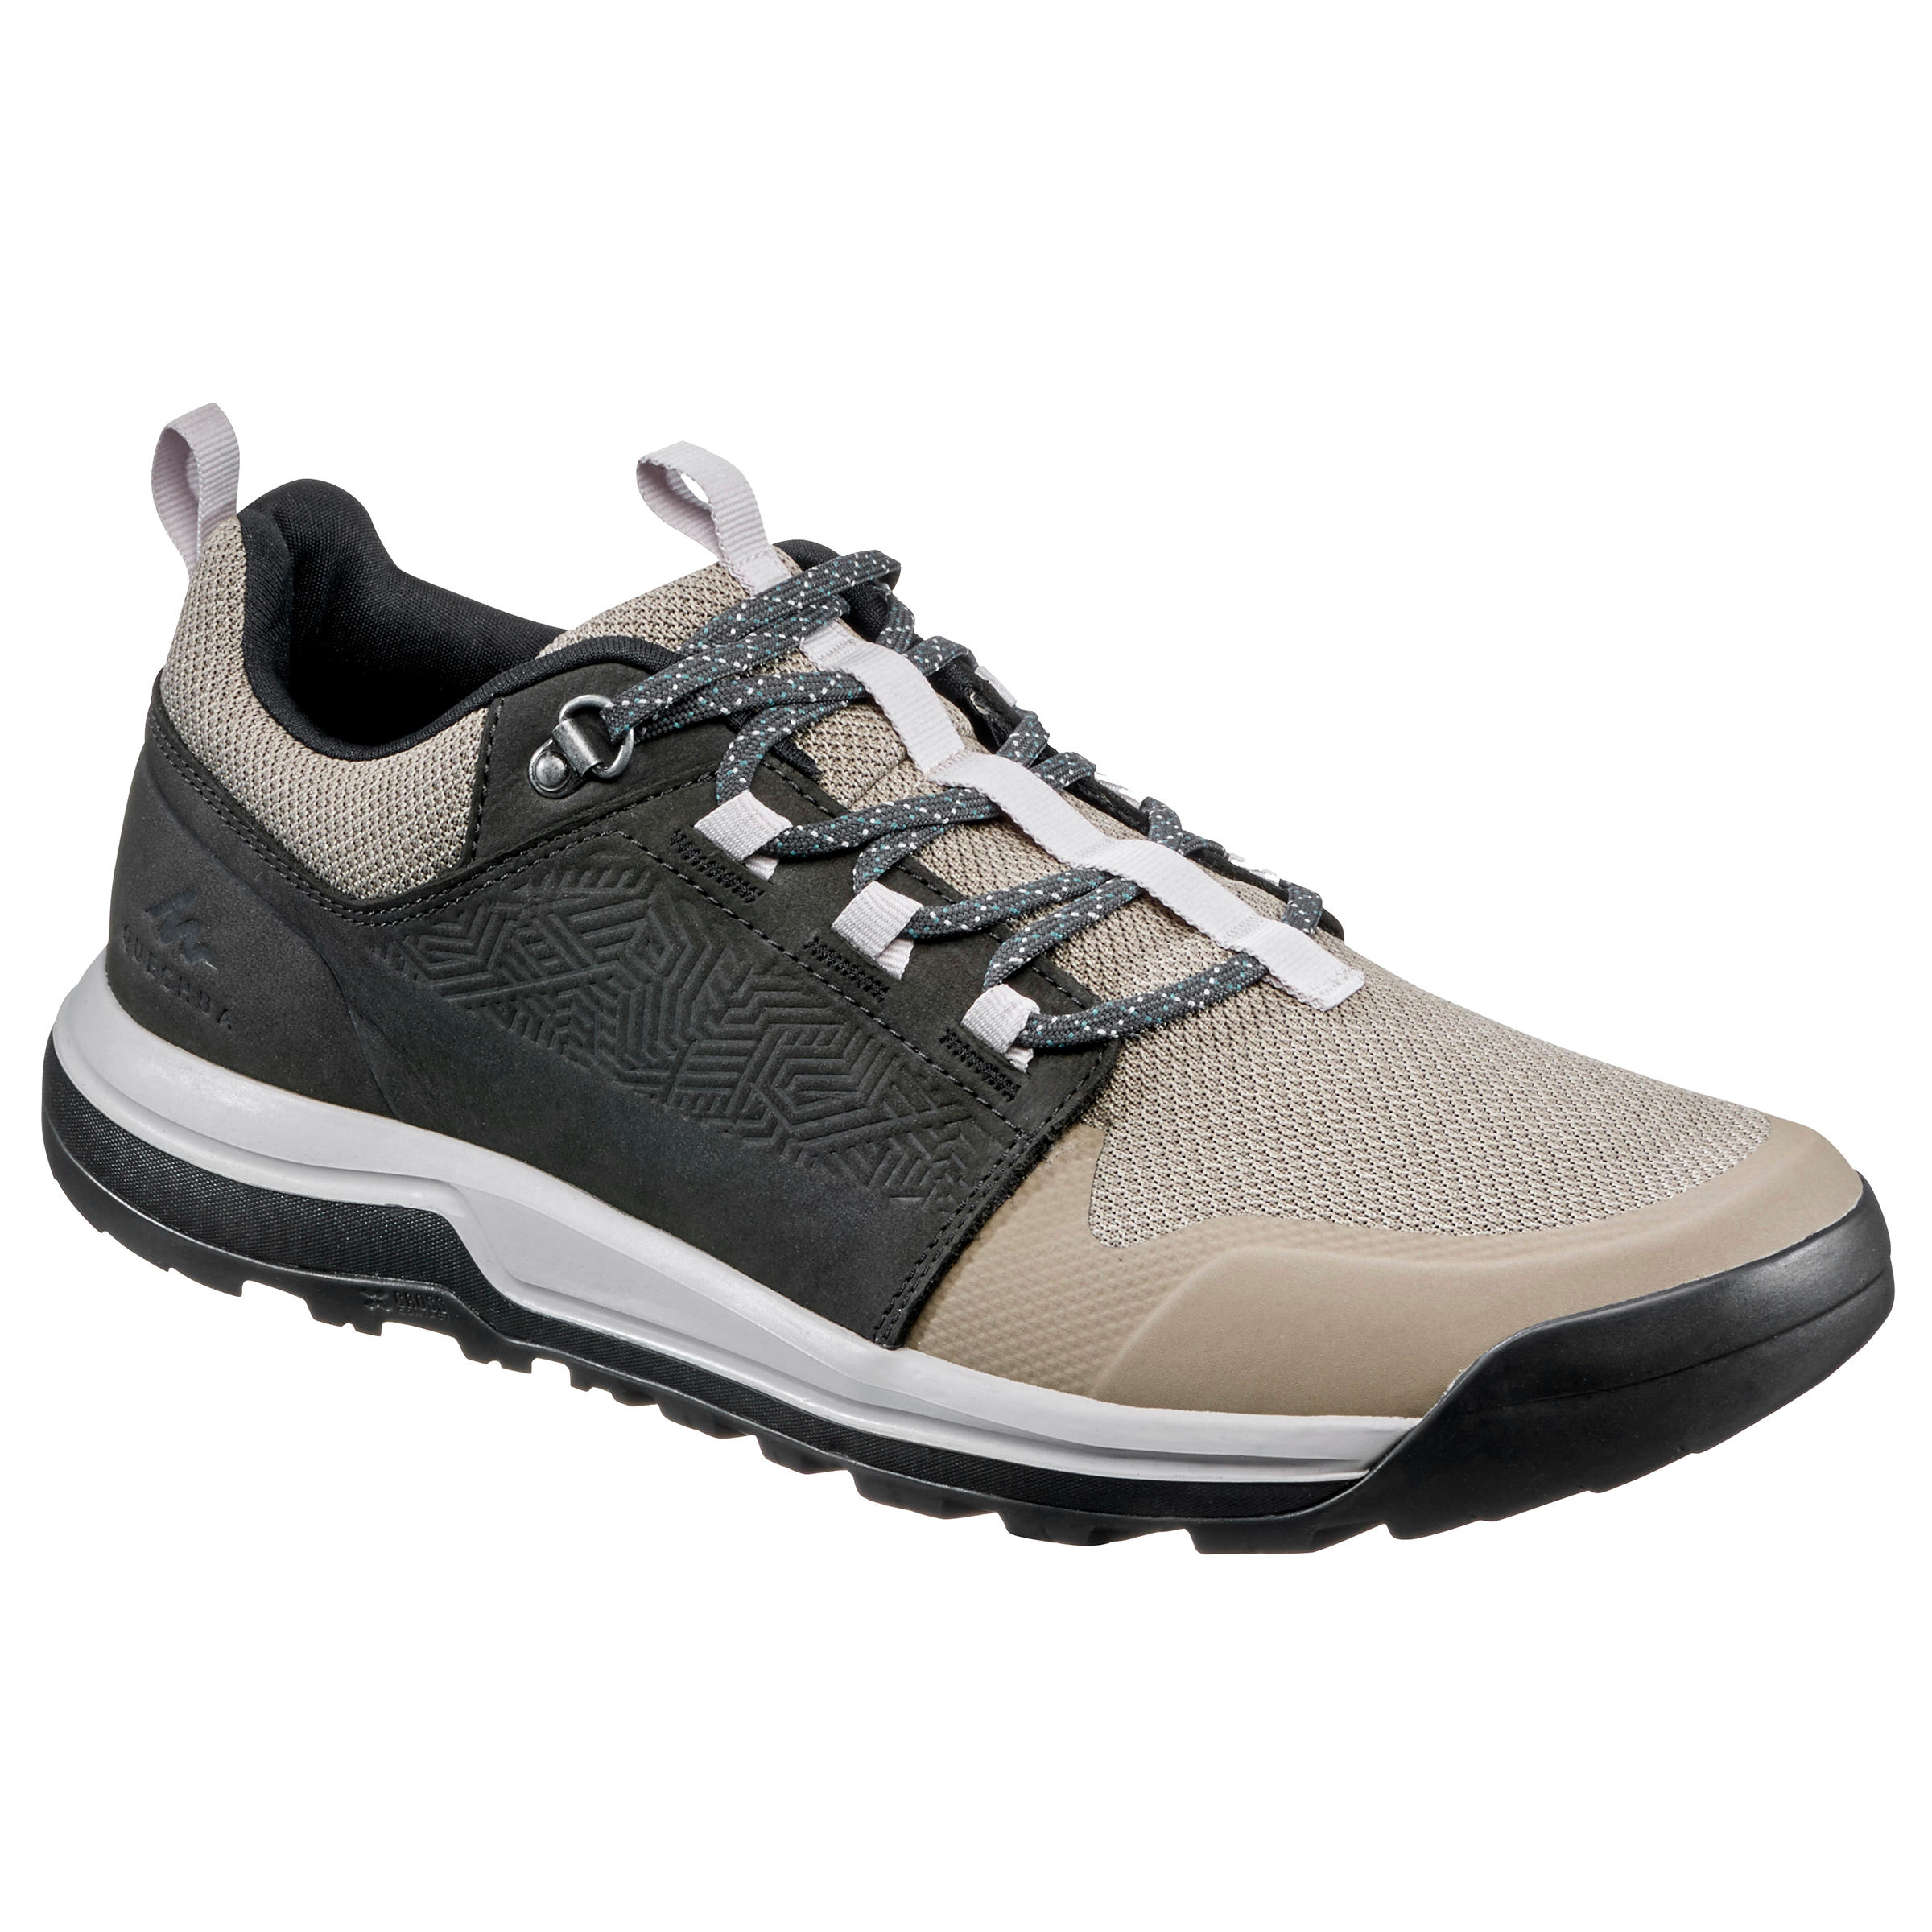 QUECHUA Men's Hiking Shoes  - NH500